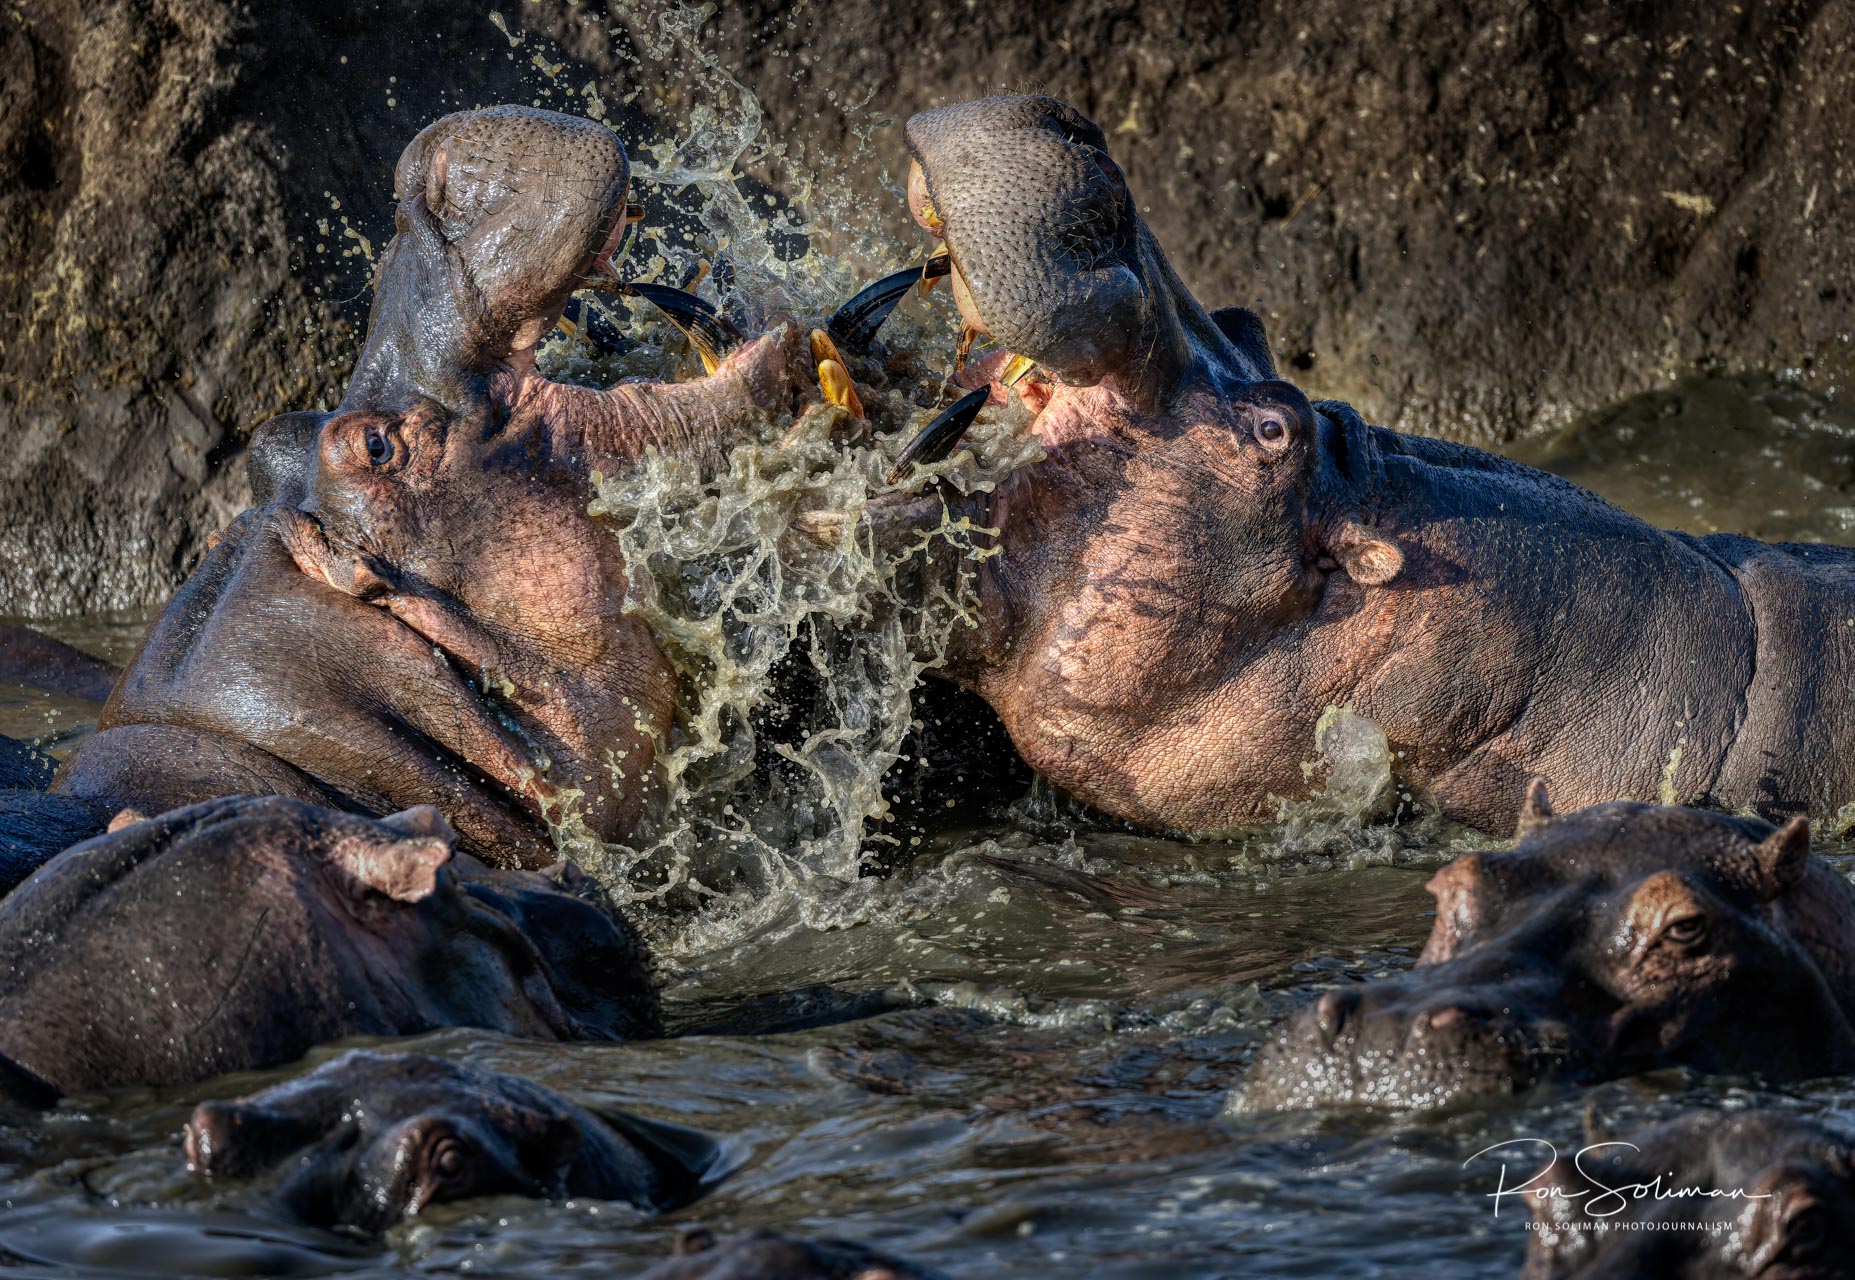 Best Wildlife photography hippo